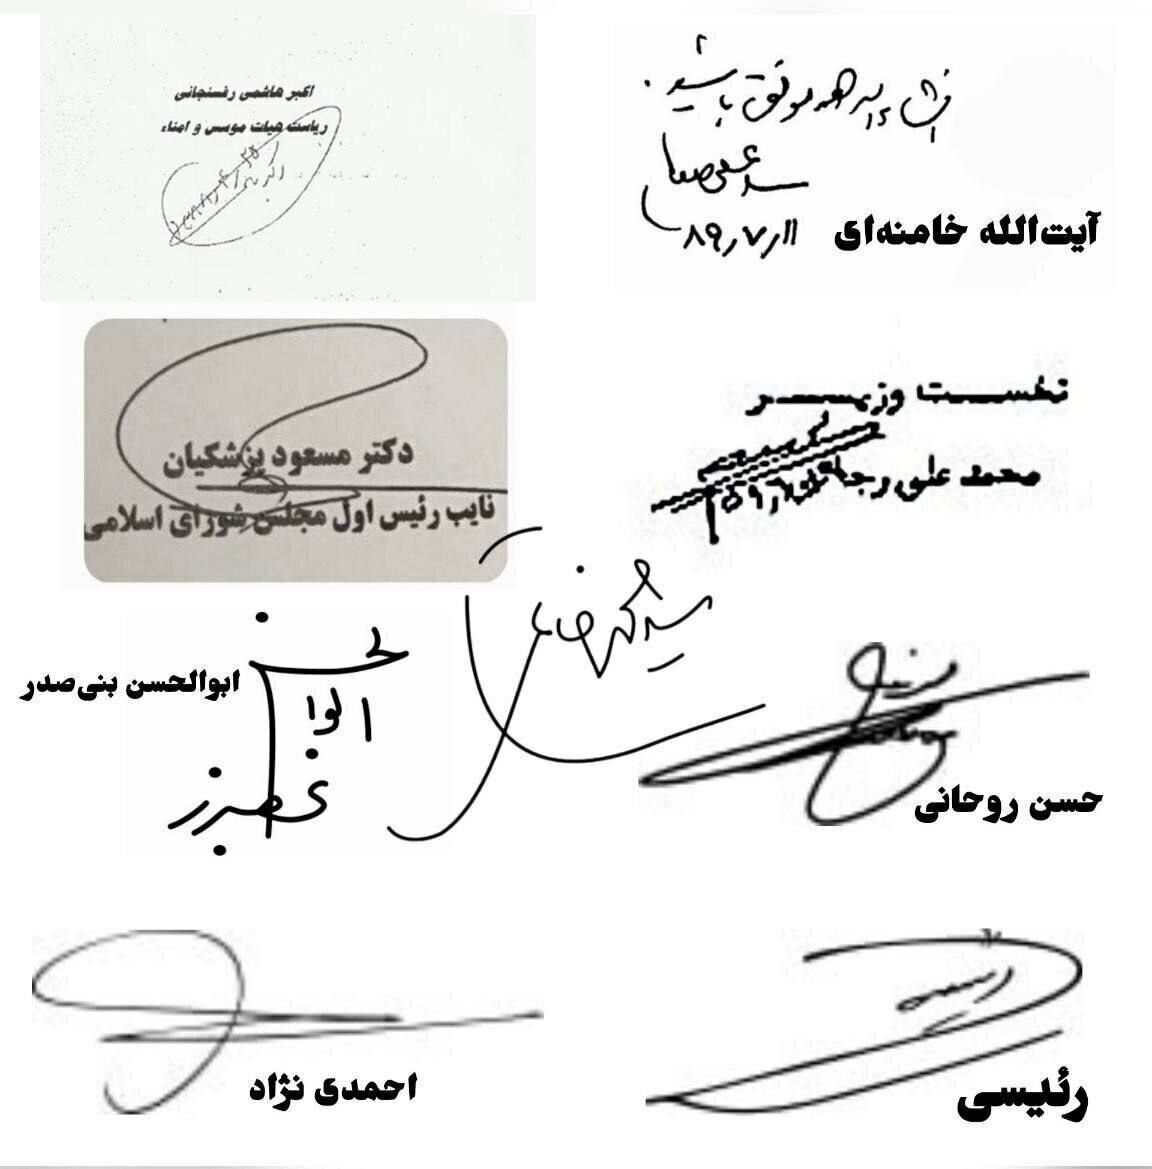 تصویری از امضاهای ۹ رئیس جمهور ایران